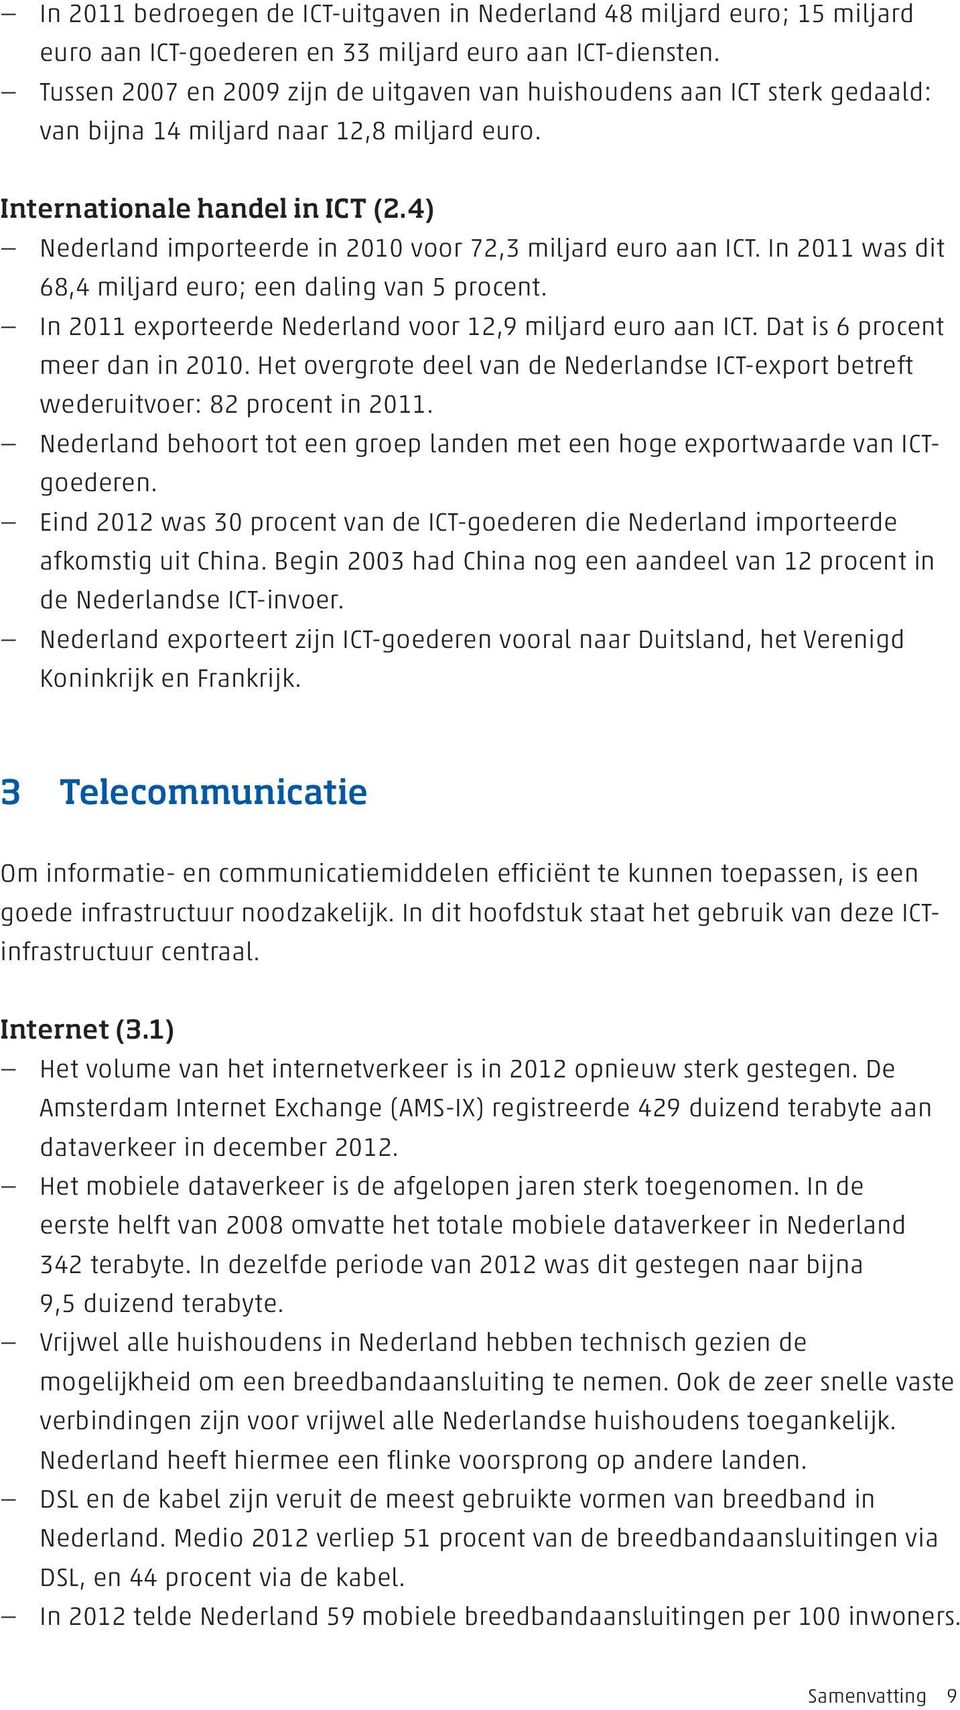 4) Nederland importeerde in 2010 voor 72,3 miljard euro aan ICT. In 2011 was dit 68,4 miljard euro; een daling van 5 procent. In 2011 exporteerde Nederland voor 12,9 miljard euro aan ICT.